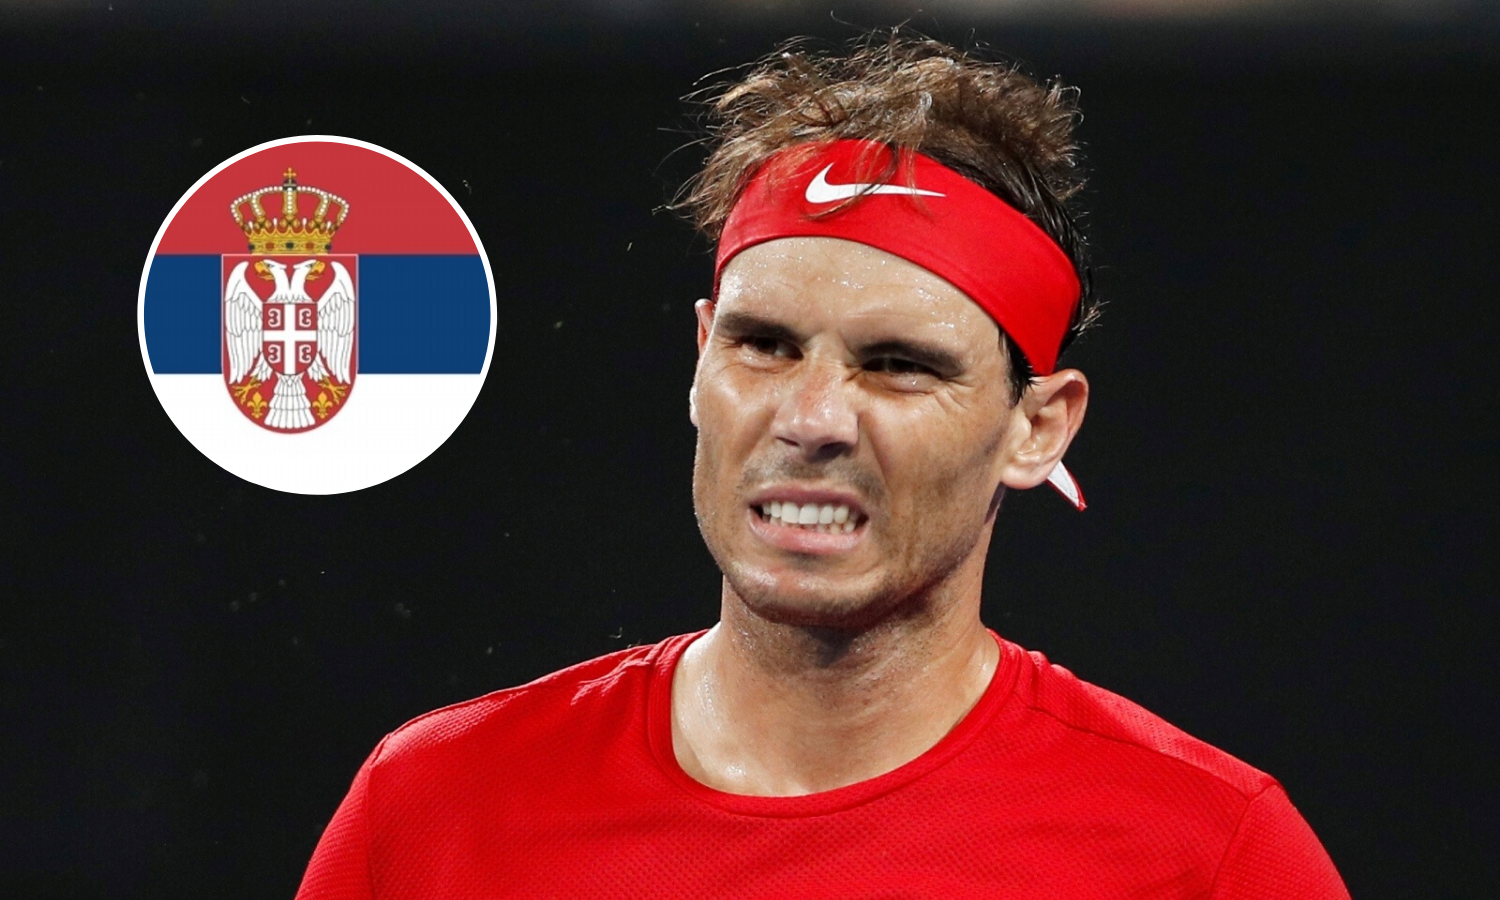 'Srpski navijači su fanatici pod supstancama! Zar je to tenis?'